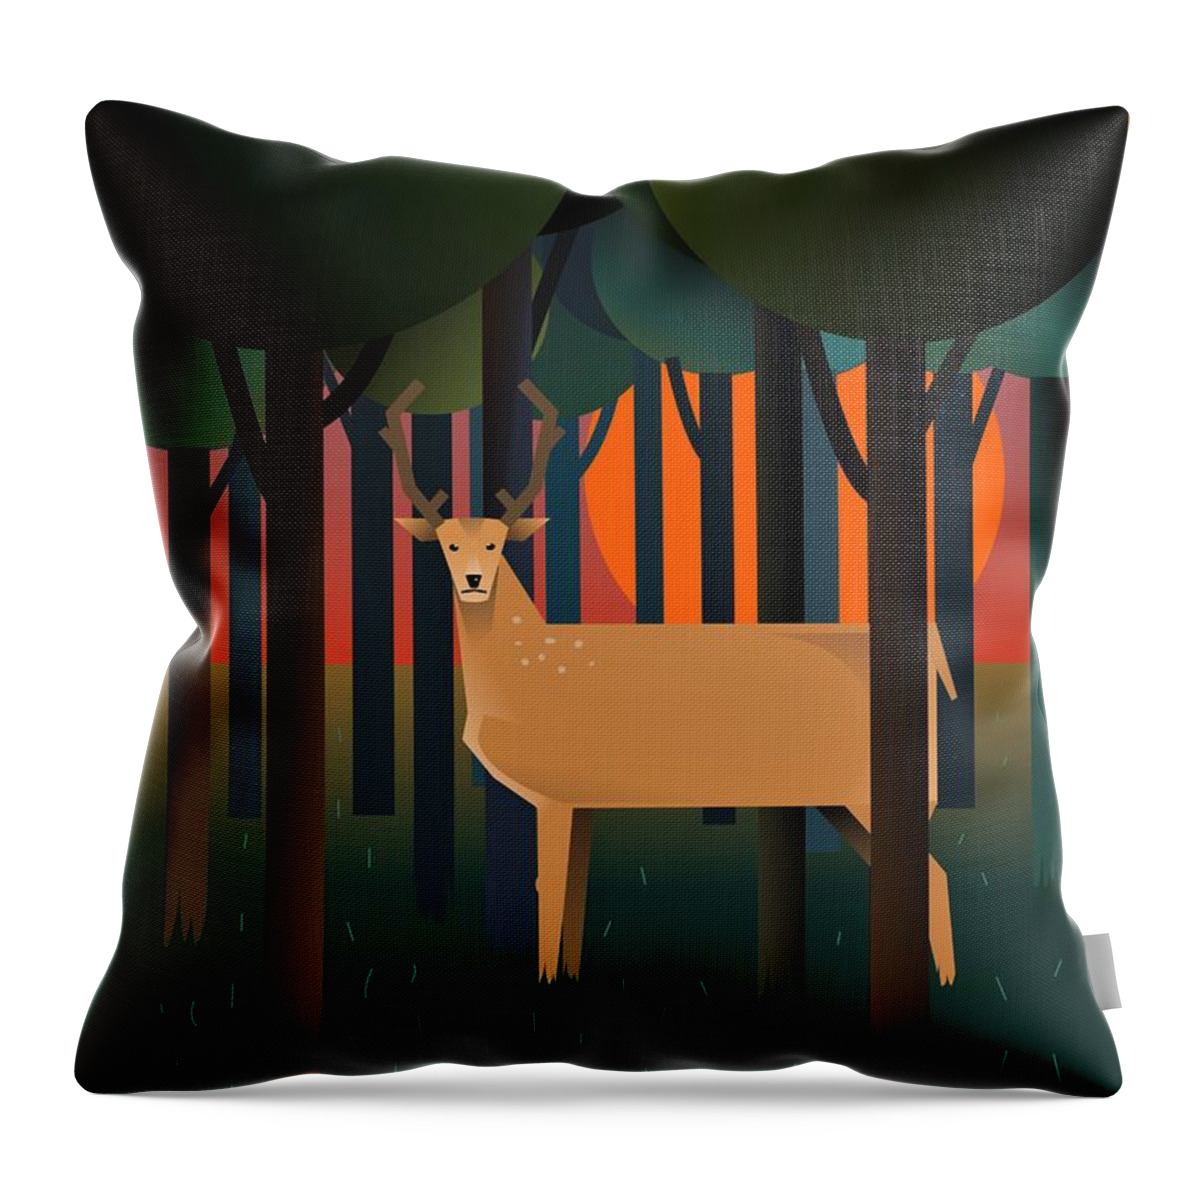 Deer Throw Pillow featuring the digital art Deerland Wood by Fatline Graphic Art